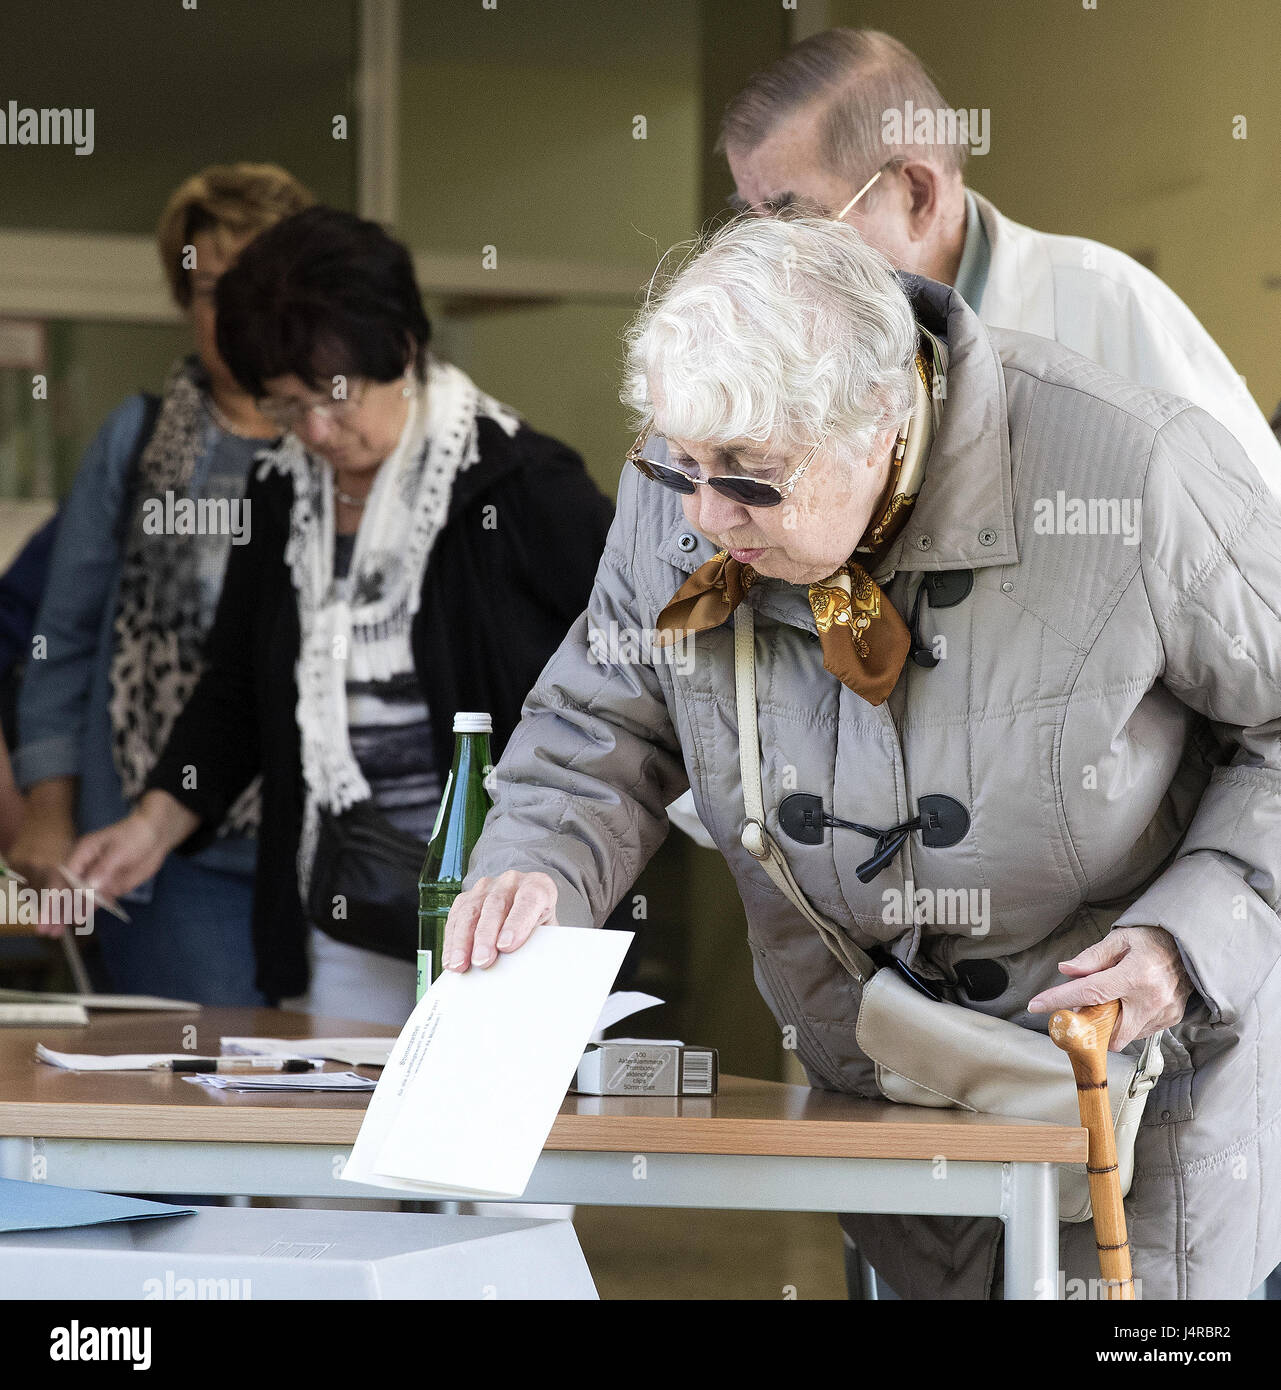 (170514) -- MUELHEIM, 14 maggio 2017 (Xinhua) -- una donna getta scrutinio per la regionale alle elezioni di stato del Land Renania settentrionale-Vestfalia in corrispondenza di una stazione di polling in Muelheim, Germania, il 14 maggio 2017. (Xinhua/Joachim Bywaletz) (DTF) Foto Stock